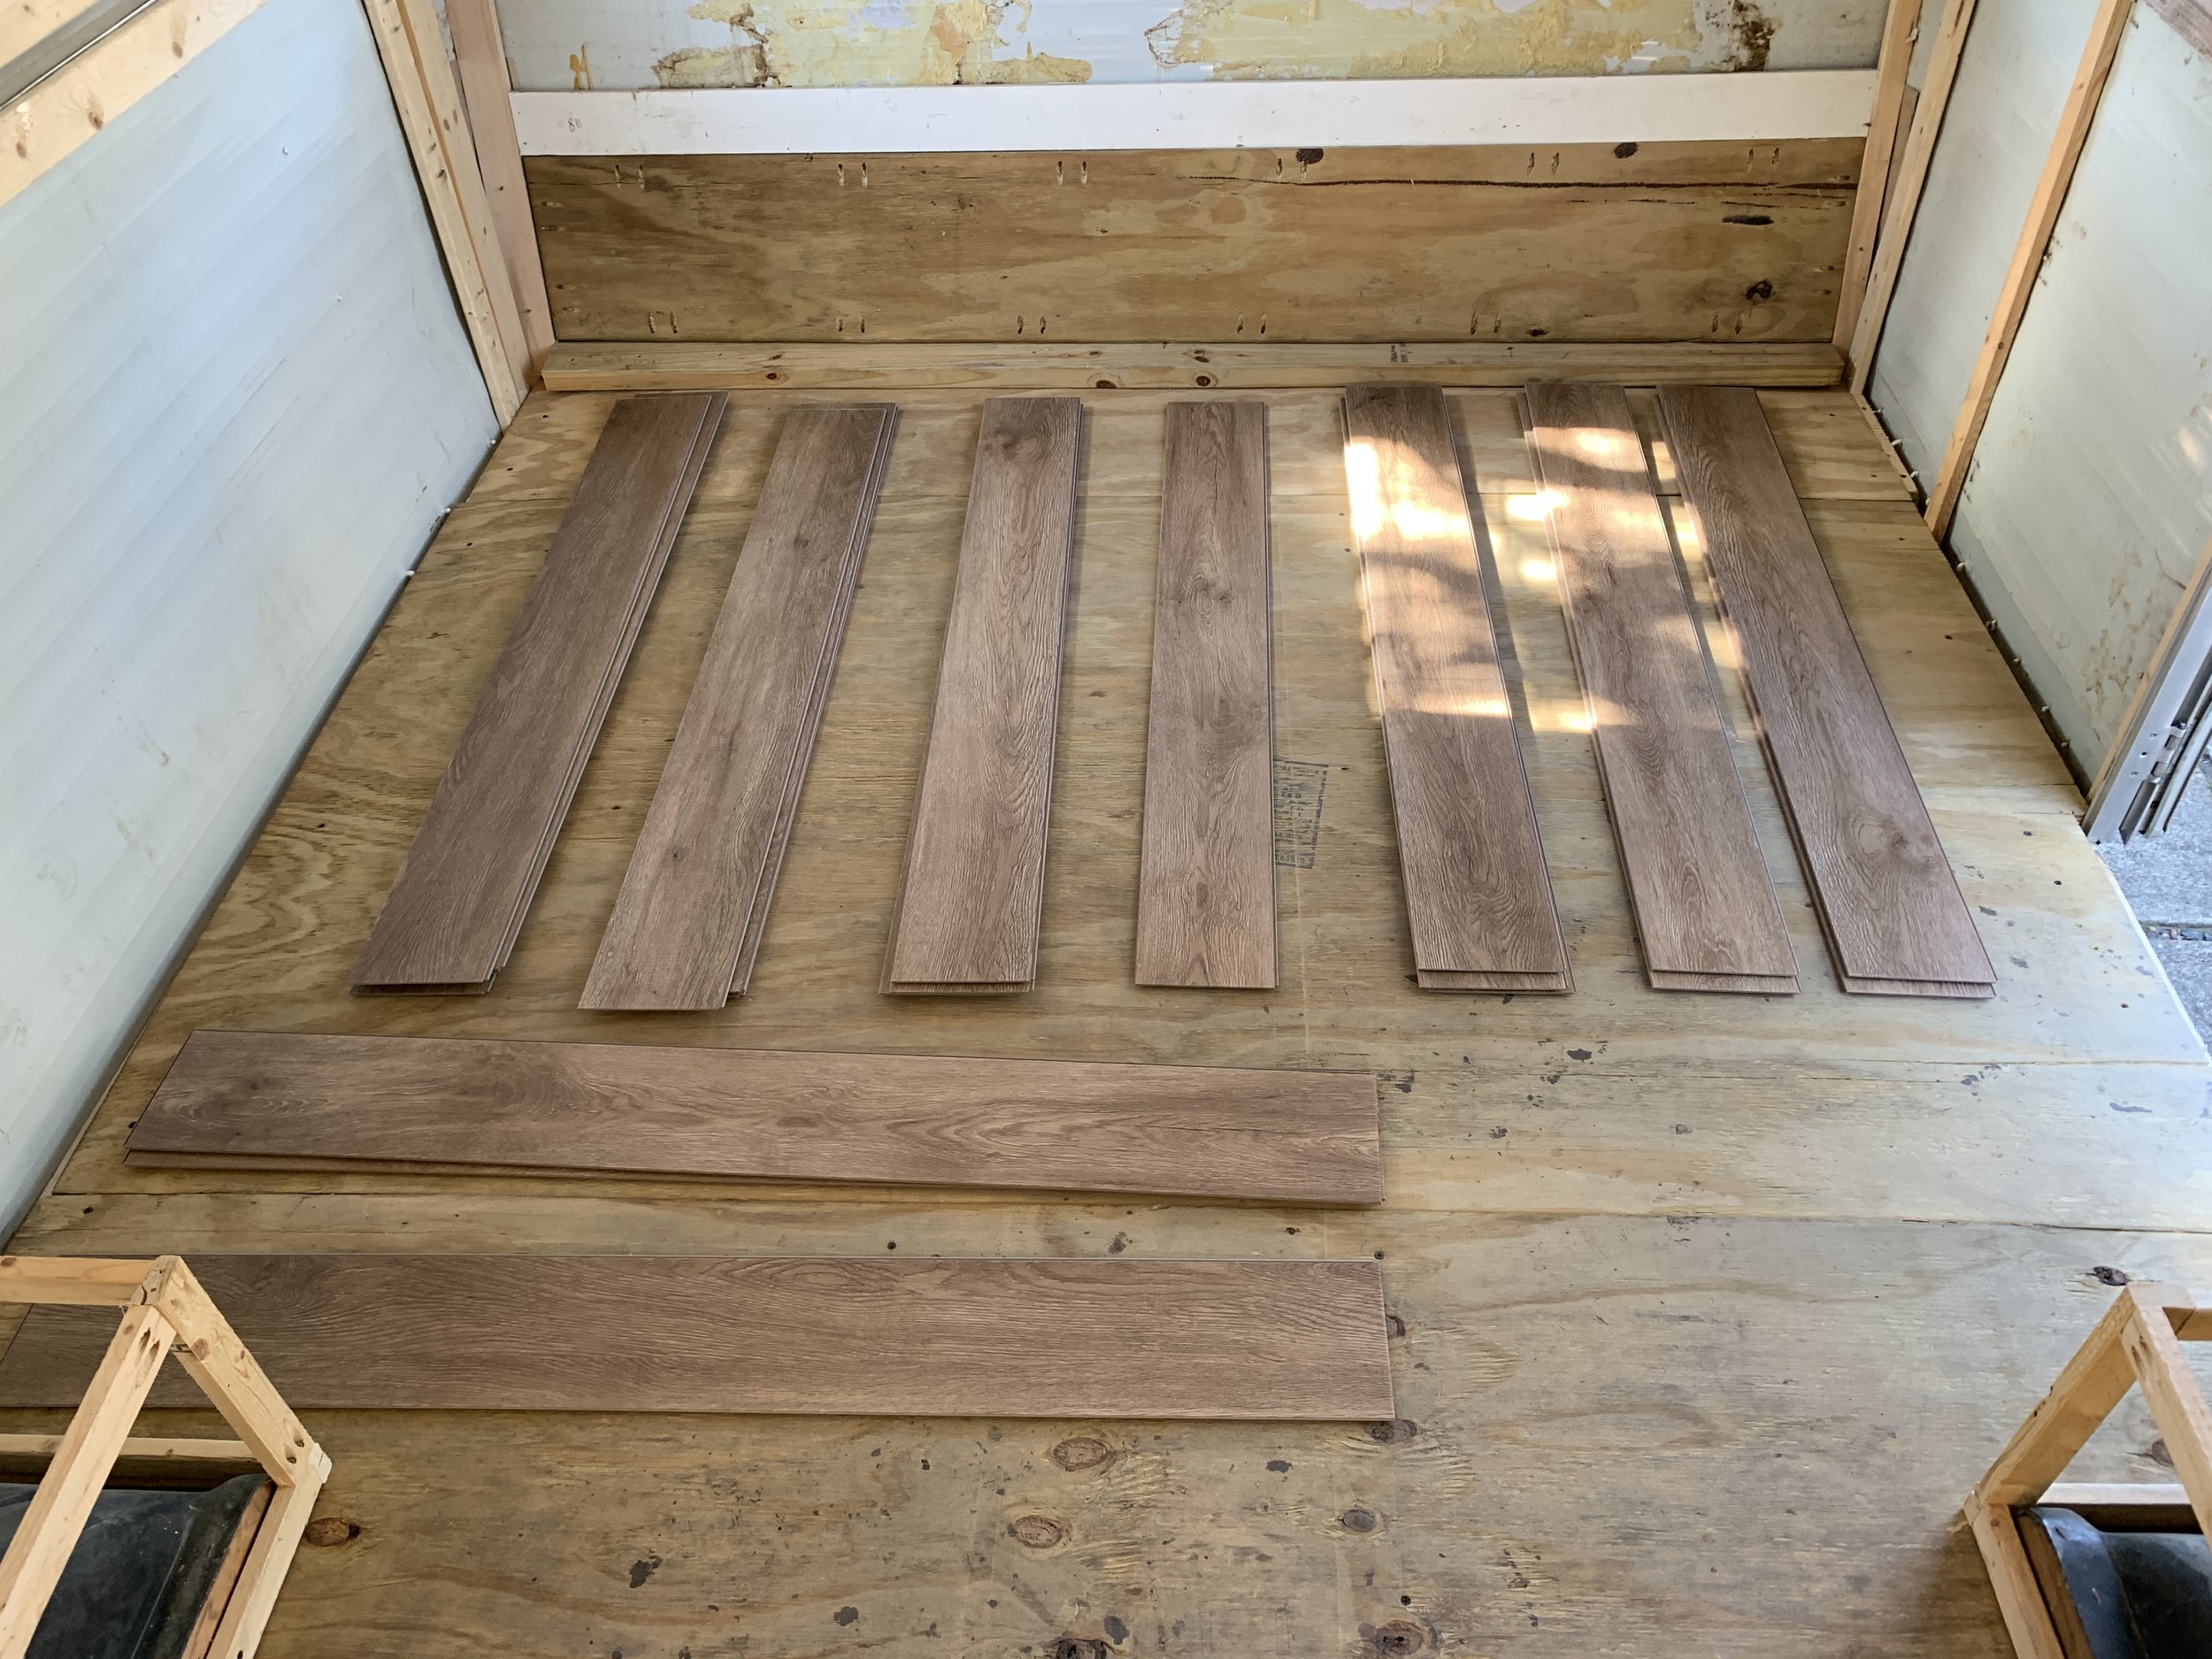 Installed Vinyl Plank Flooring, Vinyl Plank Flooring Pattern Repeat